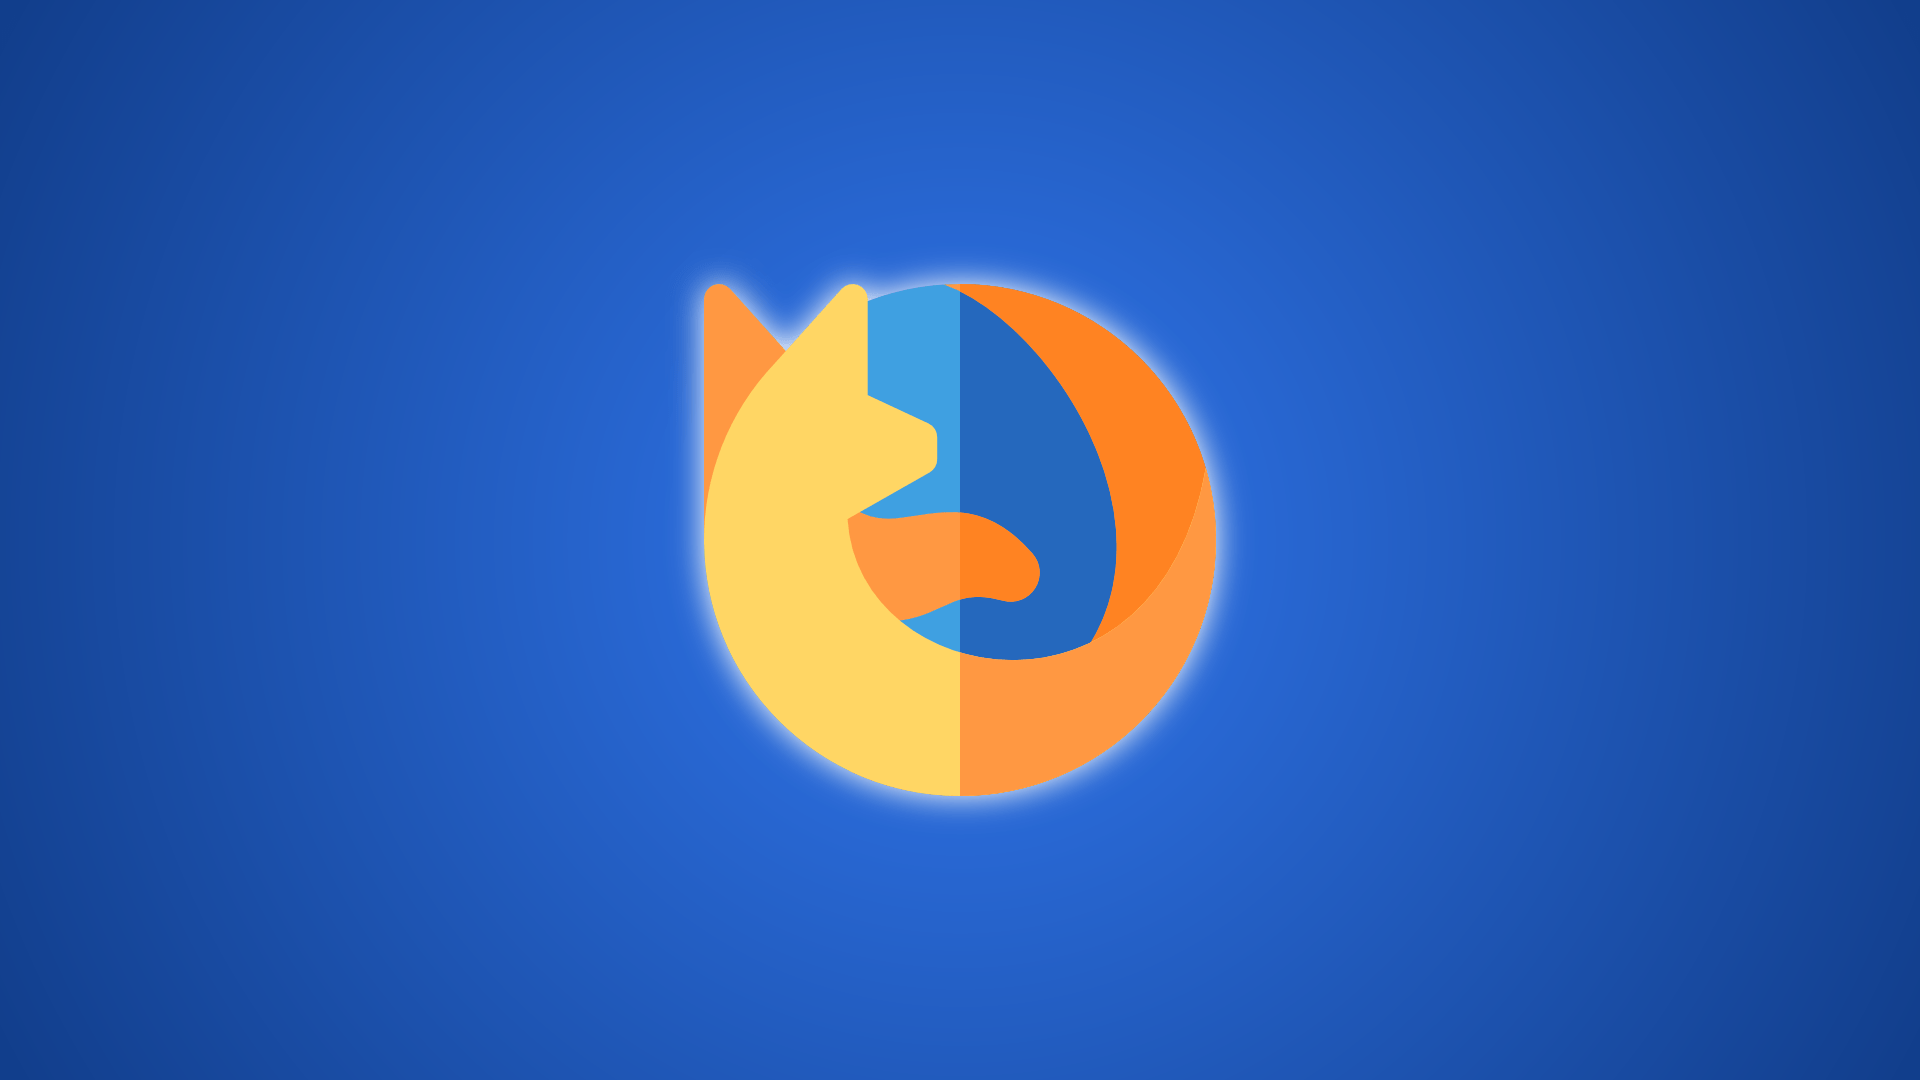 Logotipo de Firefox con fondo degradado azul oscuro